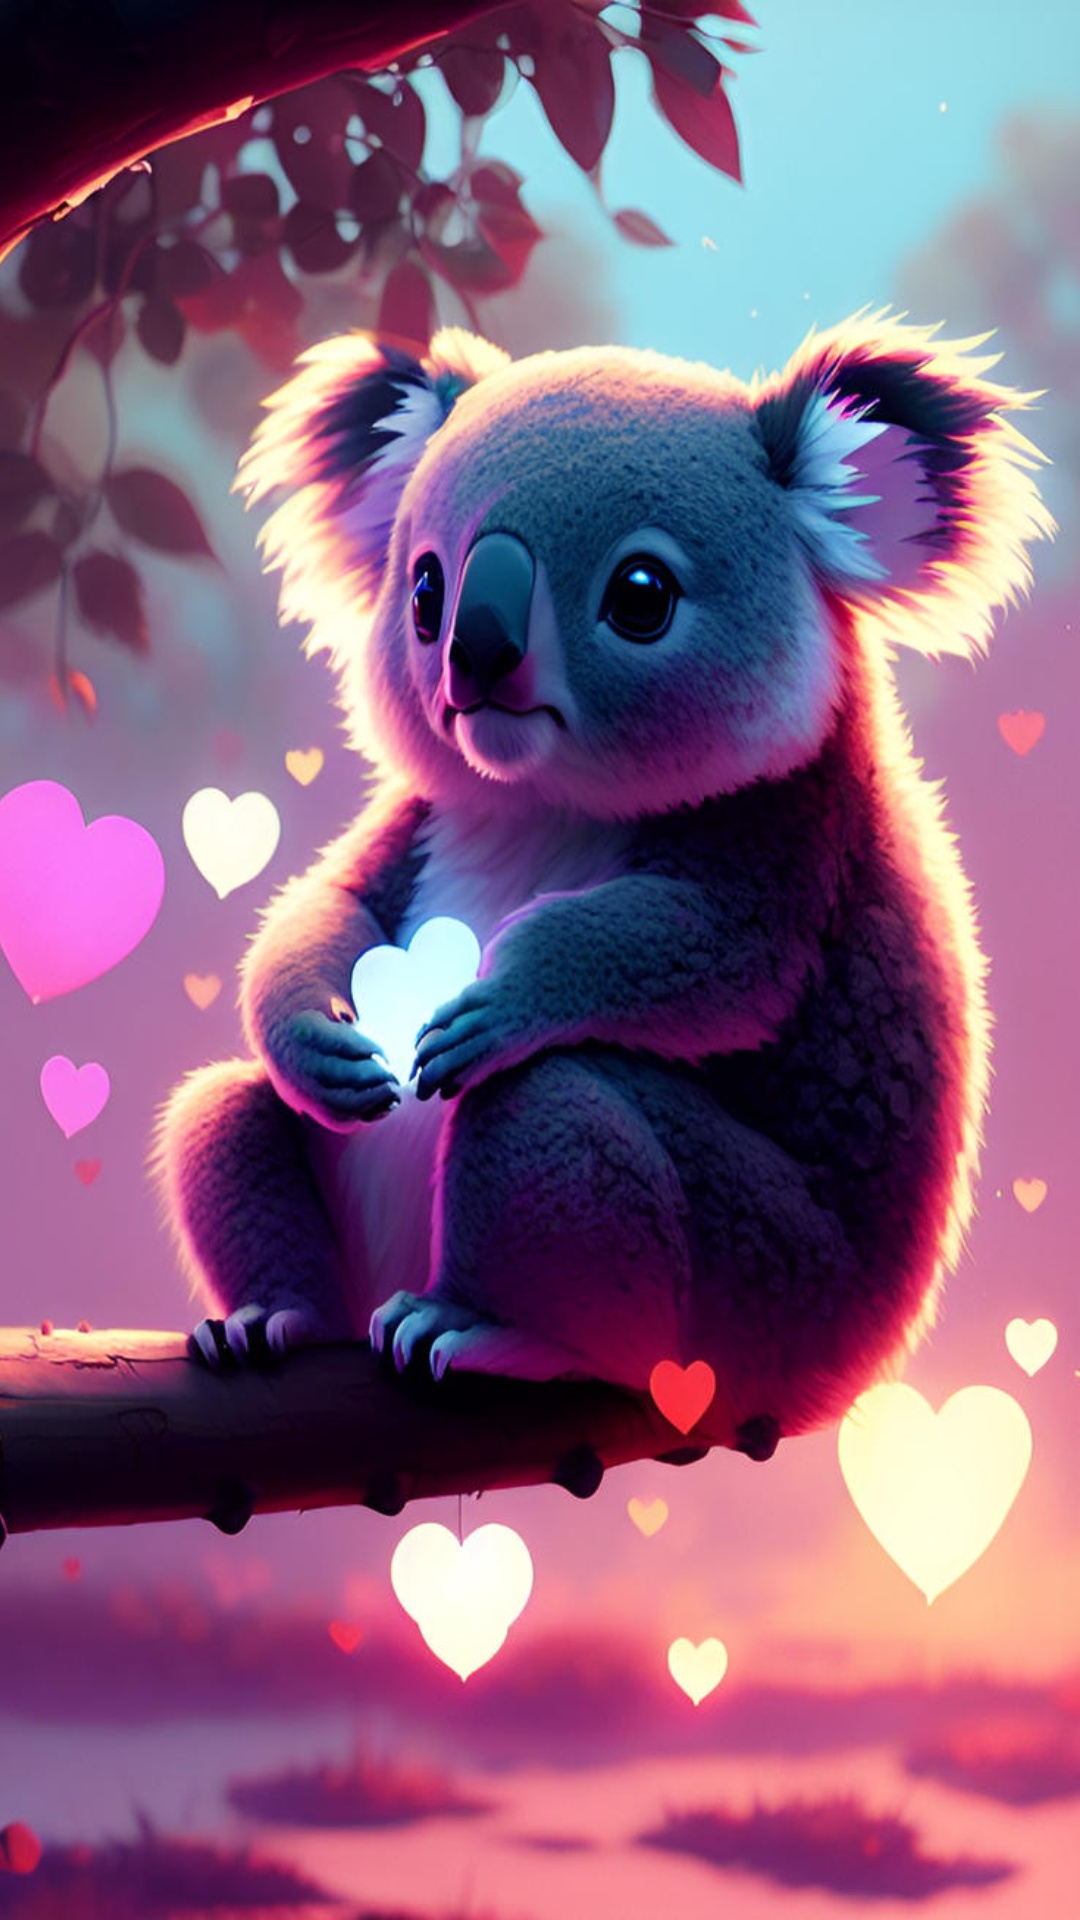 Koala Wallpaper Images